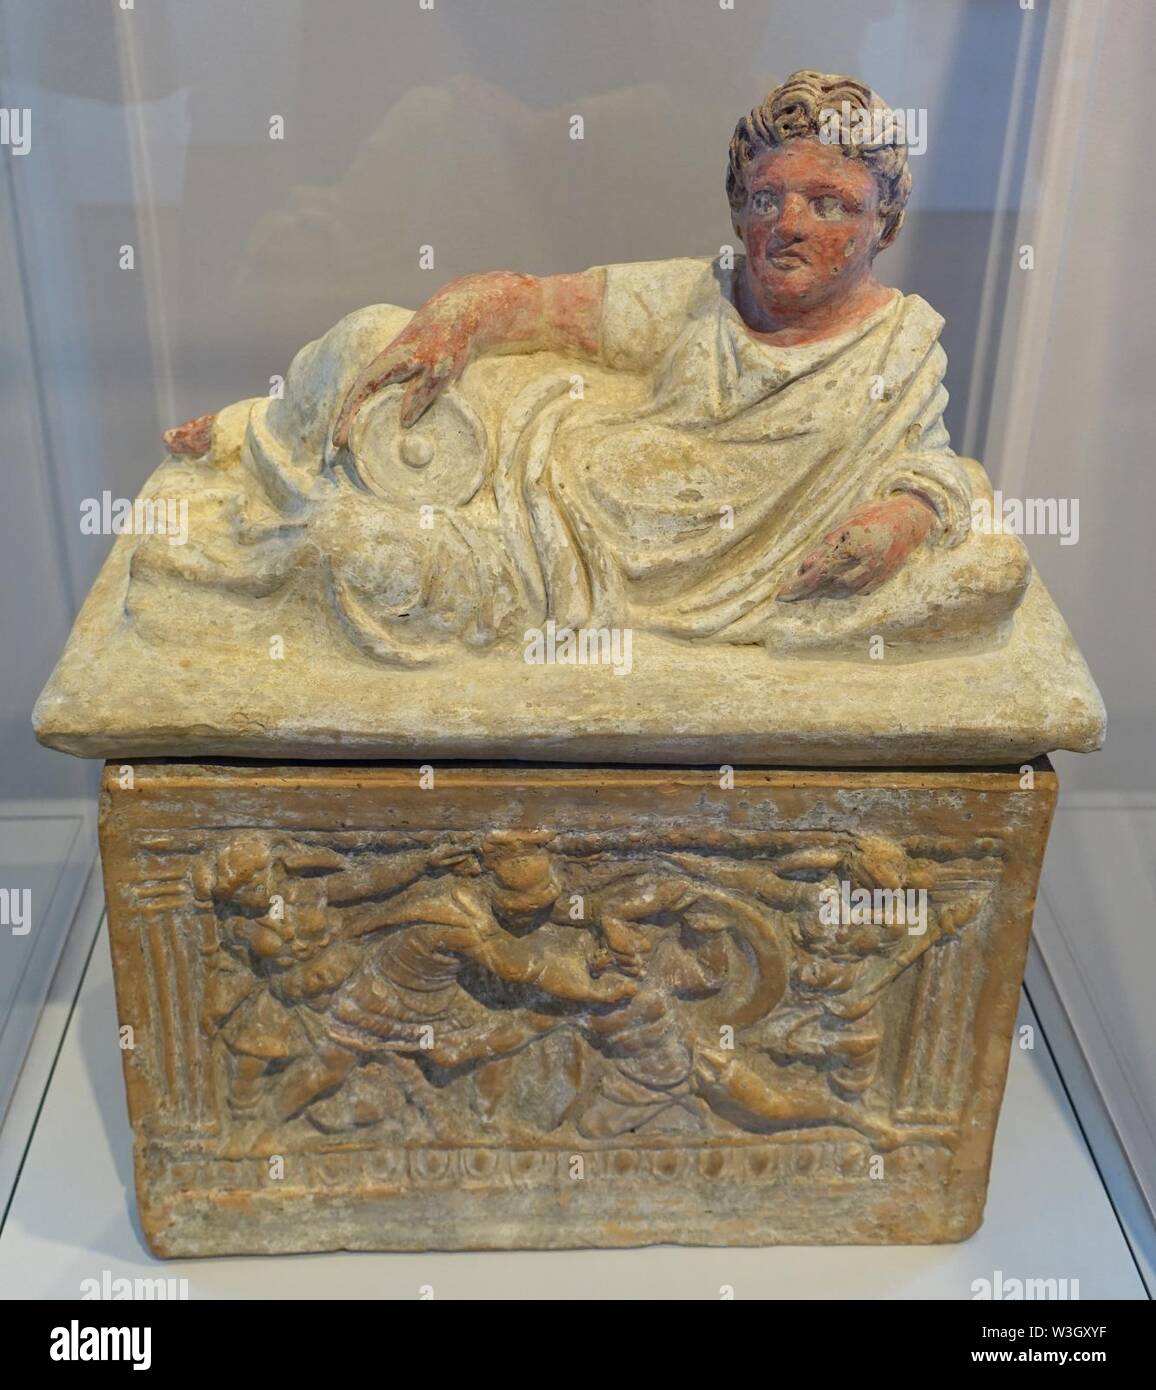 Urna cineraria con uomo reclinabili e la scena di battaglia, etrusca, probabilmente da Clusium (chiusi), prima metà del II secolo a.c. terracotta dipinta - Foto Stock